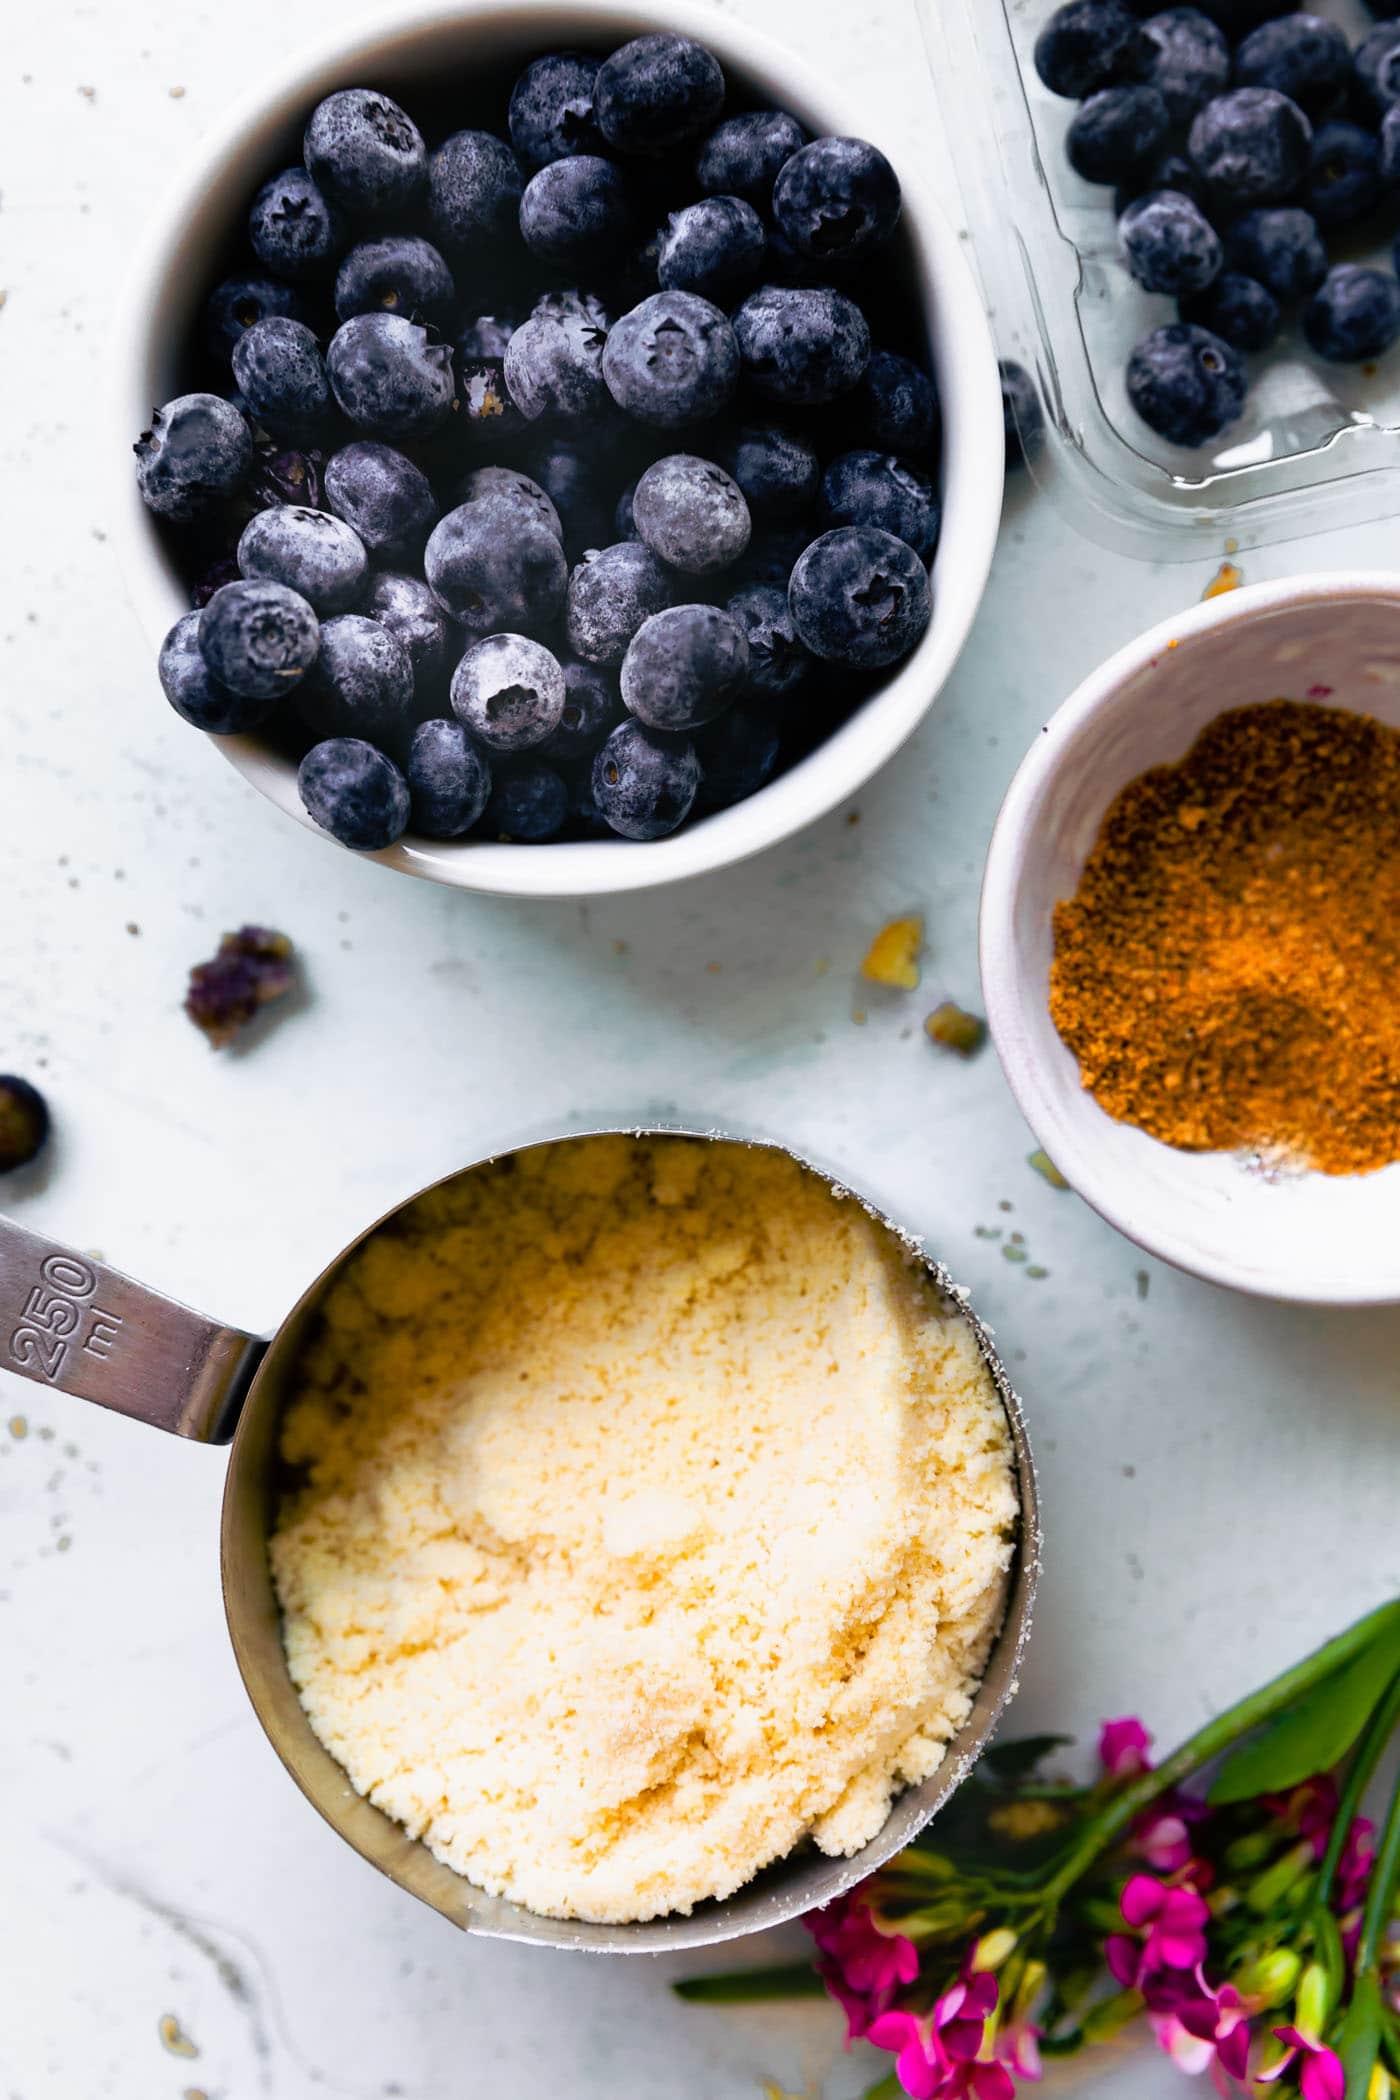 ingredients - blueberries, almond flour, sugar